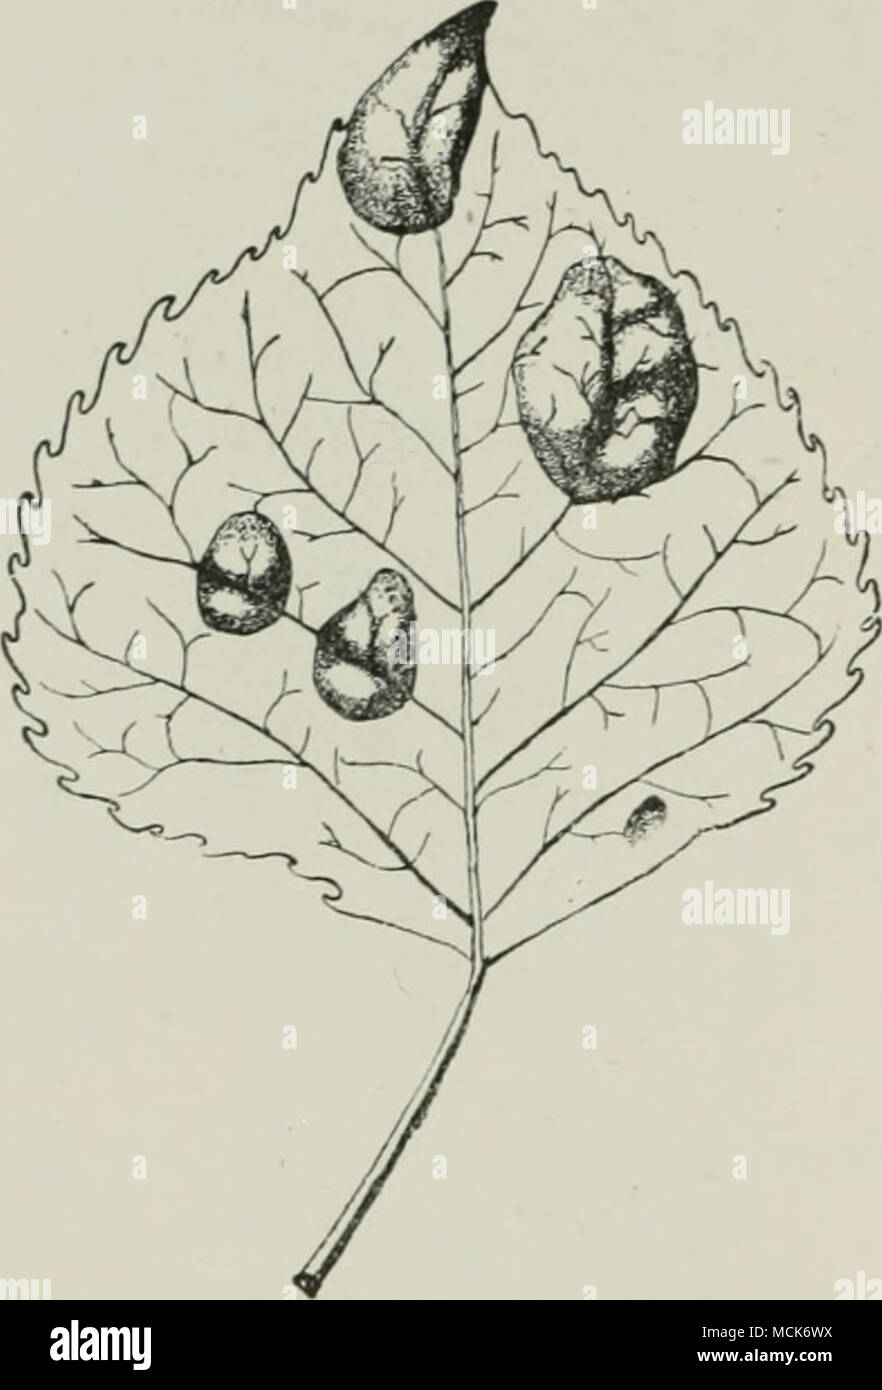 . Fici. 0-.—Exoascus av.rtvs. Leaf of Popv.lv.s nUjra, showing the pistule-like swellings. Tubeuf del.) (V. Stock Photo